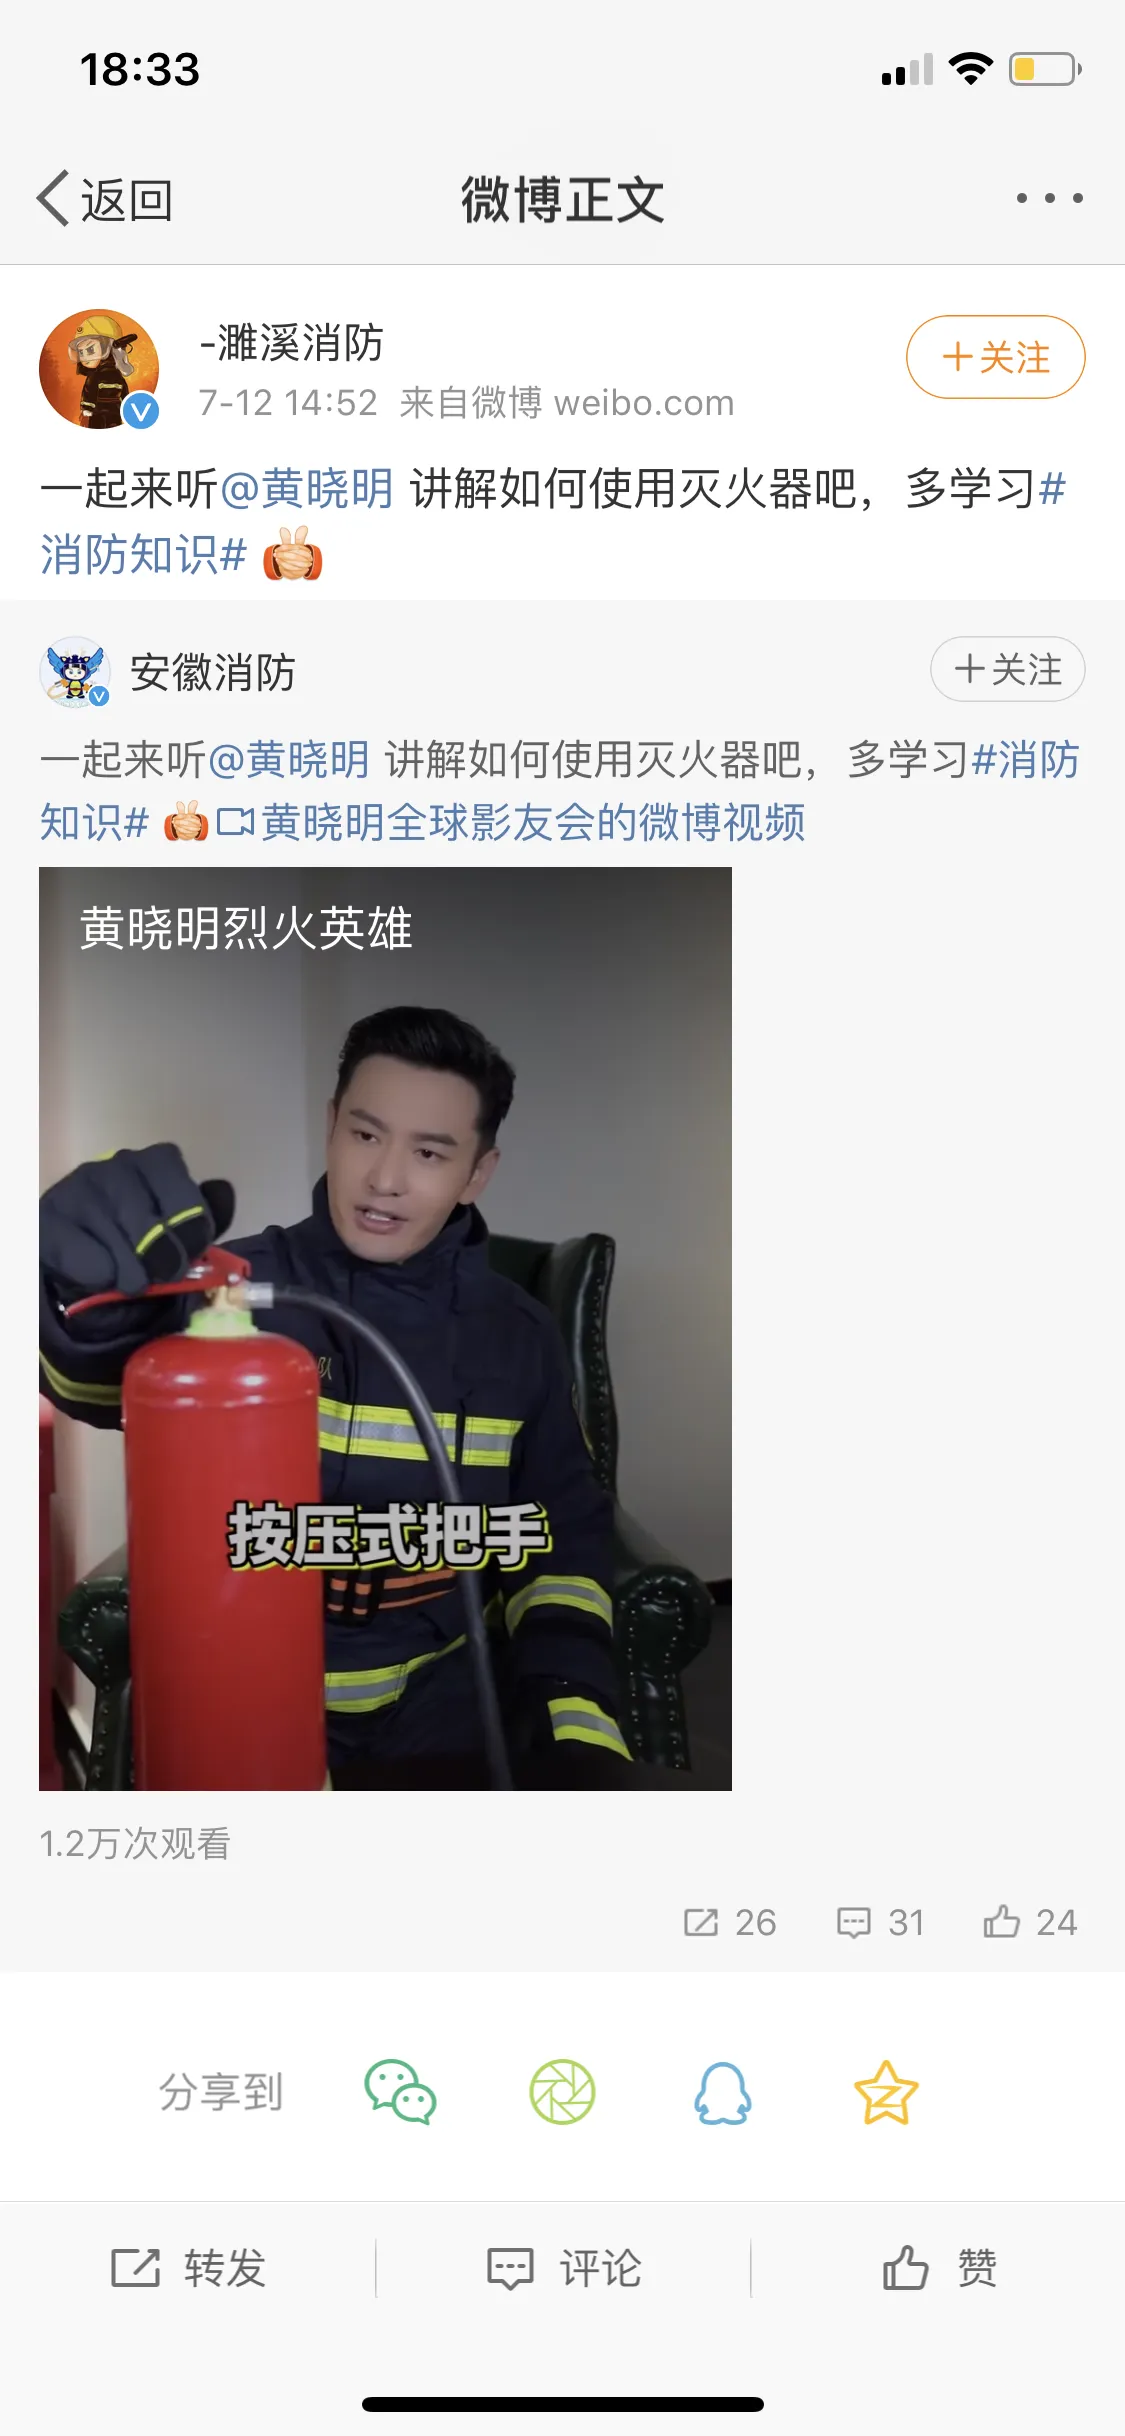  Xiaoming Huang “种草”家用灭火器 多省市消防转发.png